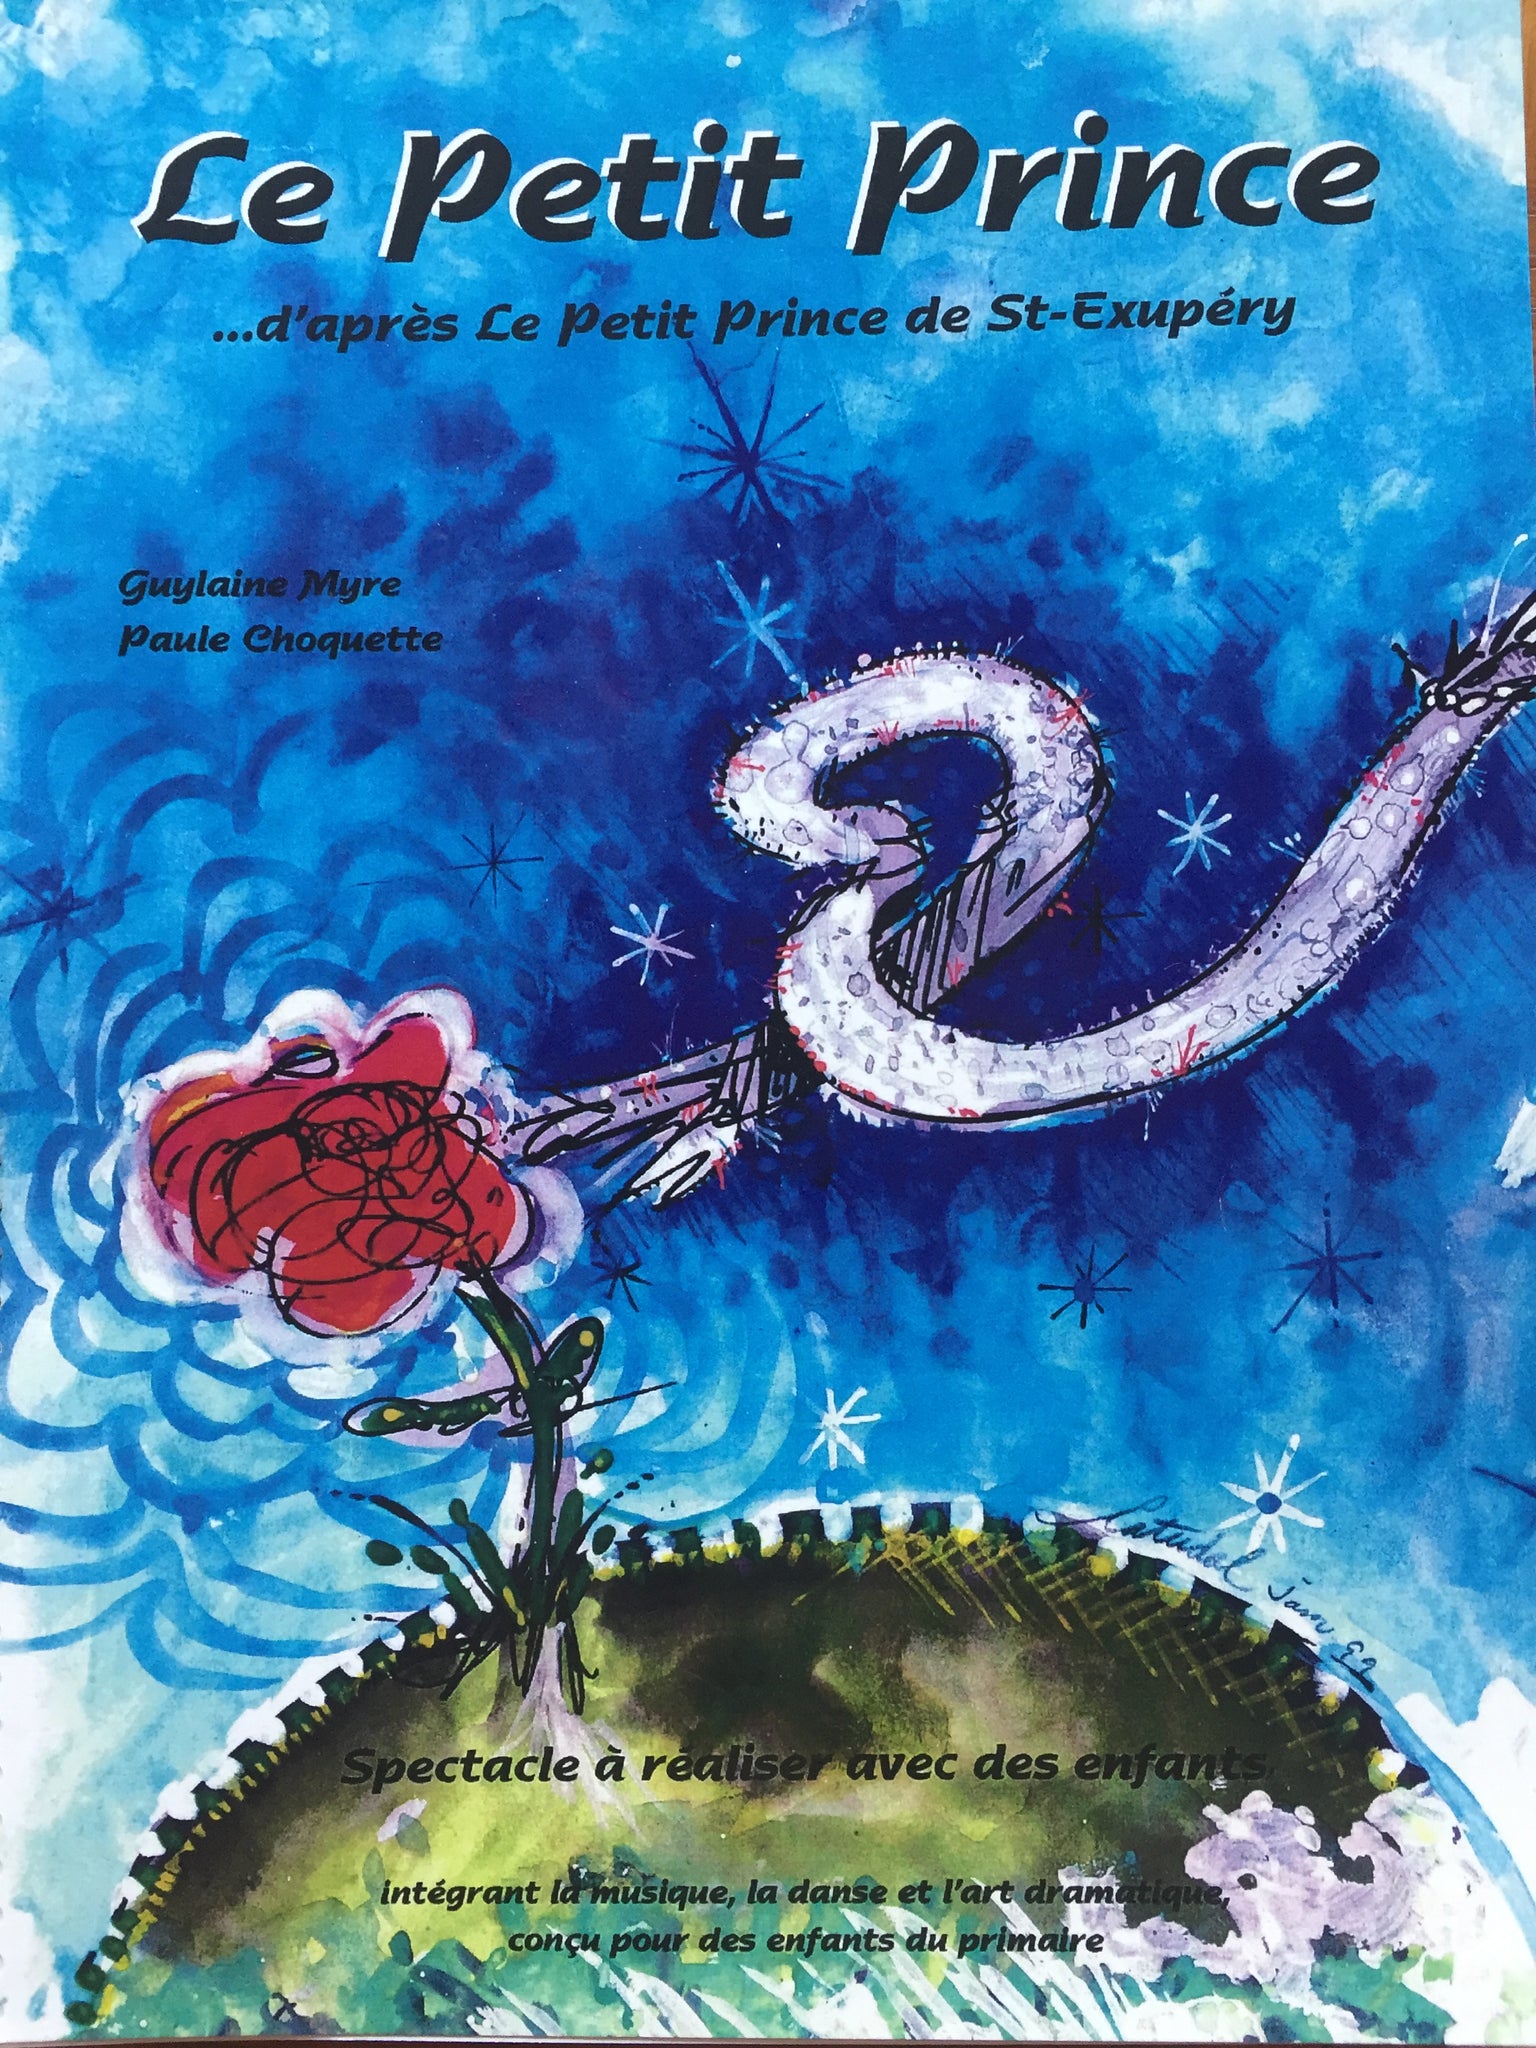 Version complète pour le montage de la comédie musicale Le petit prince créée par ORFF en spectacle, Guylaine Myre